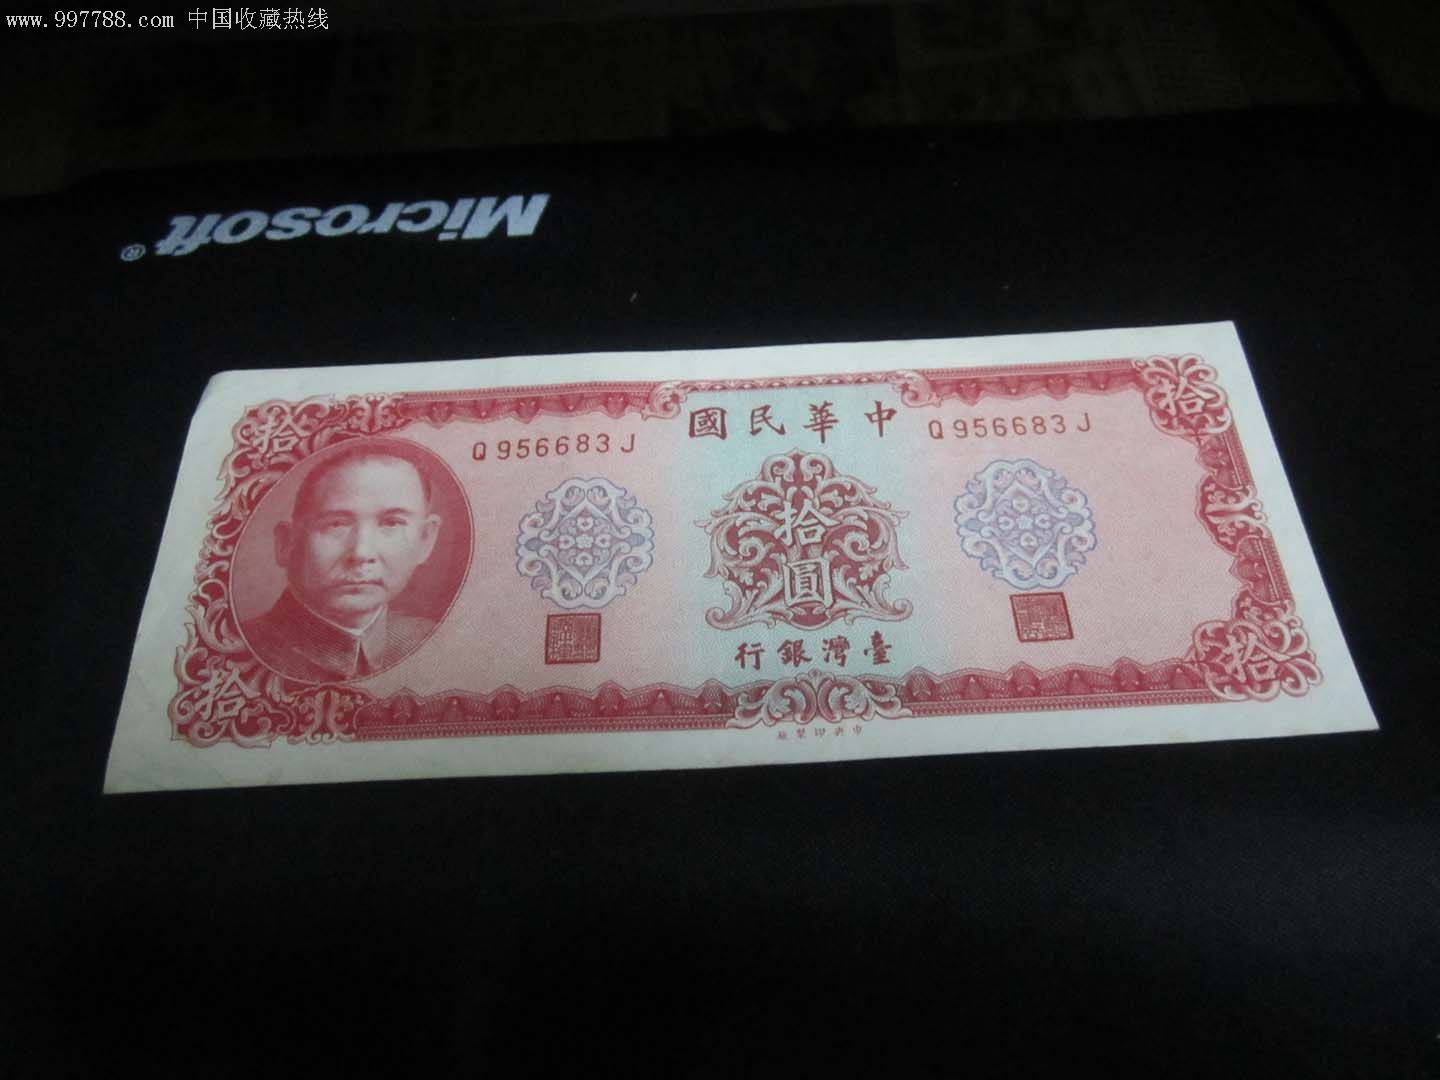 1台湾币是多少人民币_第四套人民币名币钞王_人民法治网艾尔发币